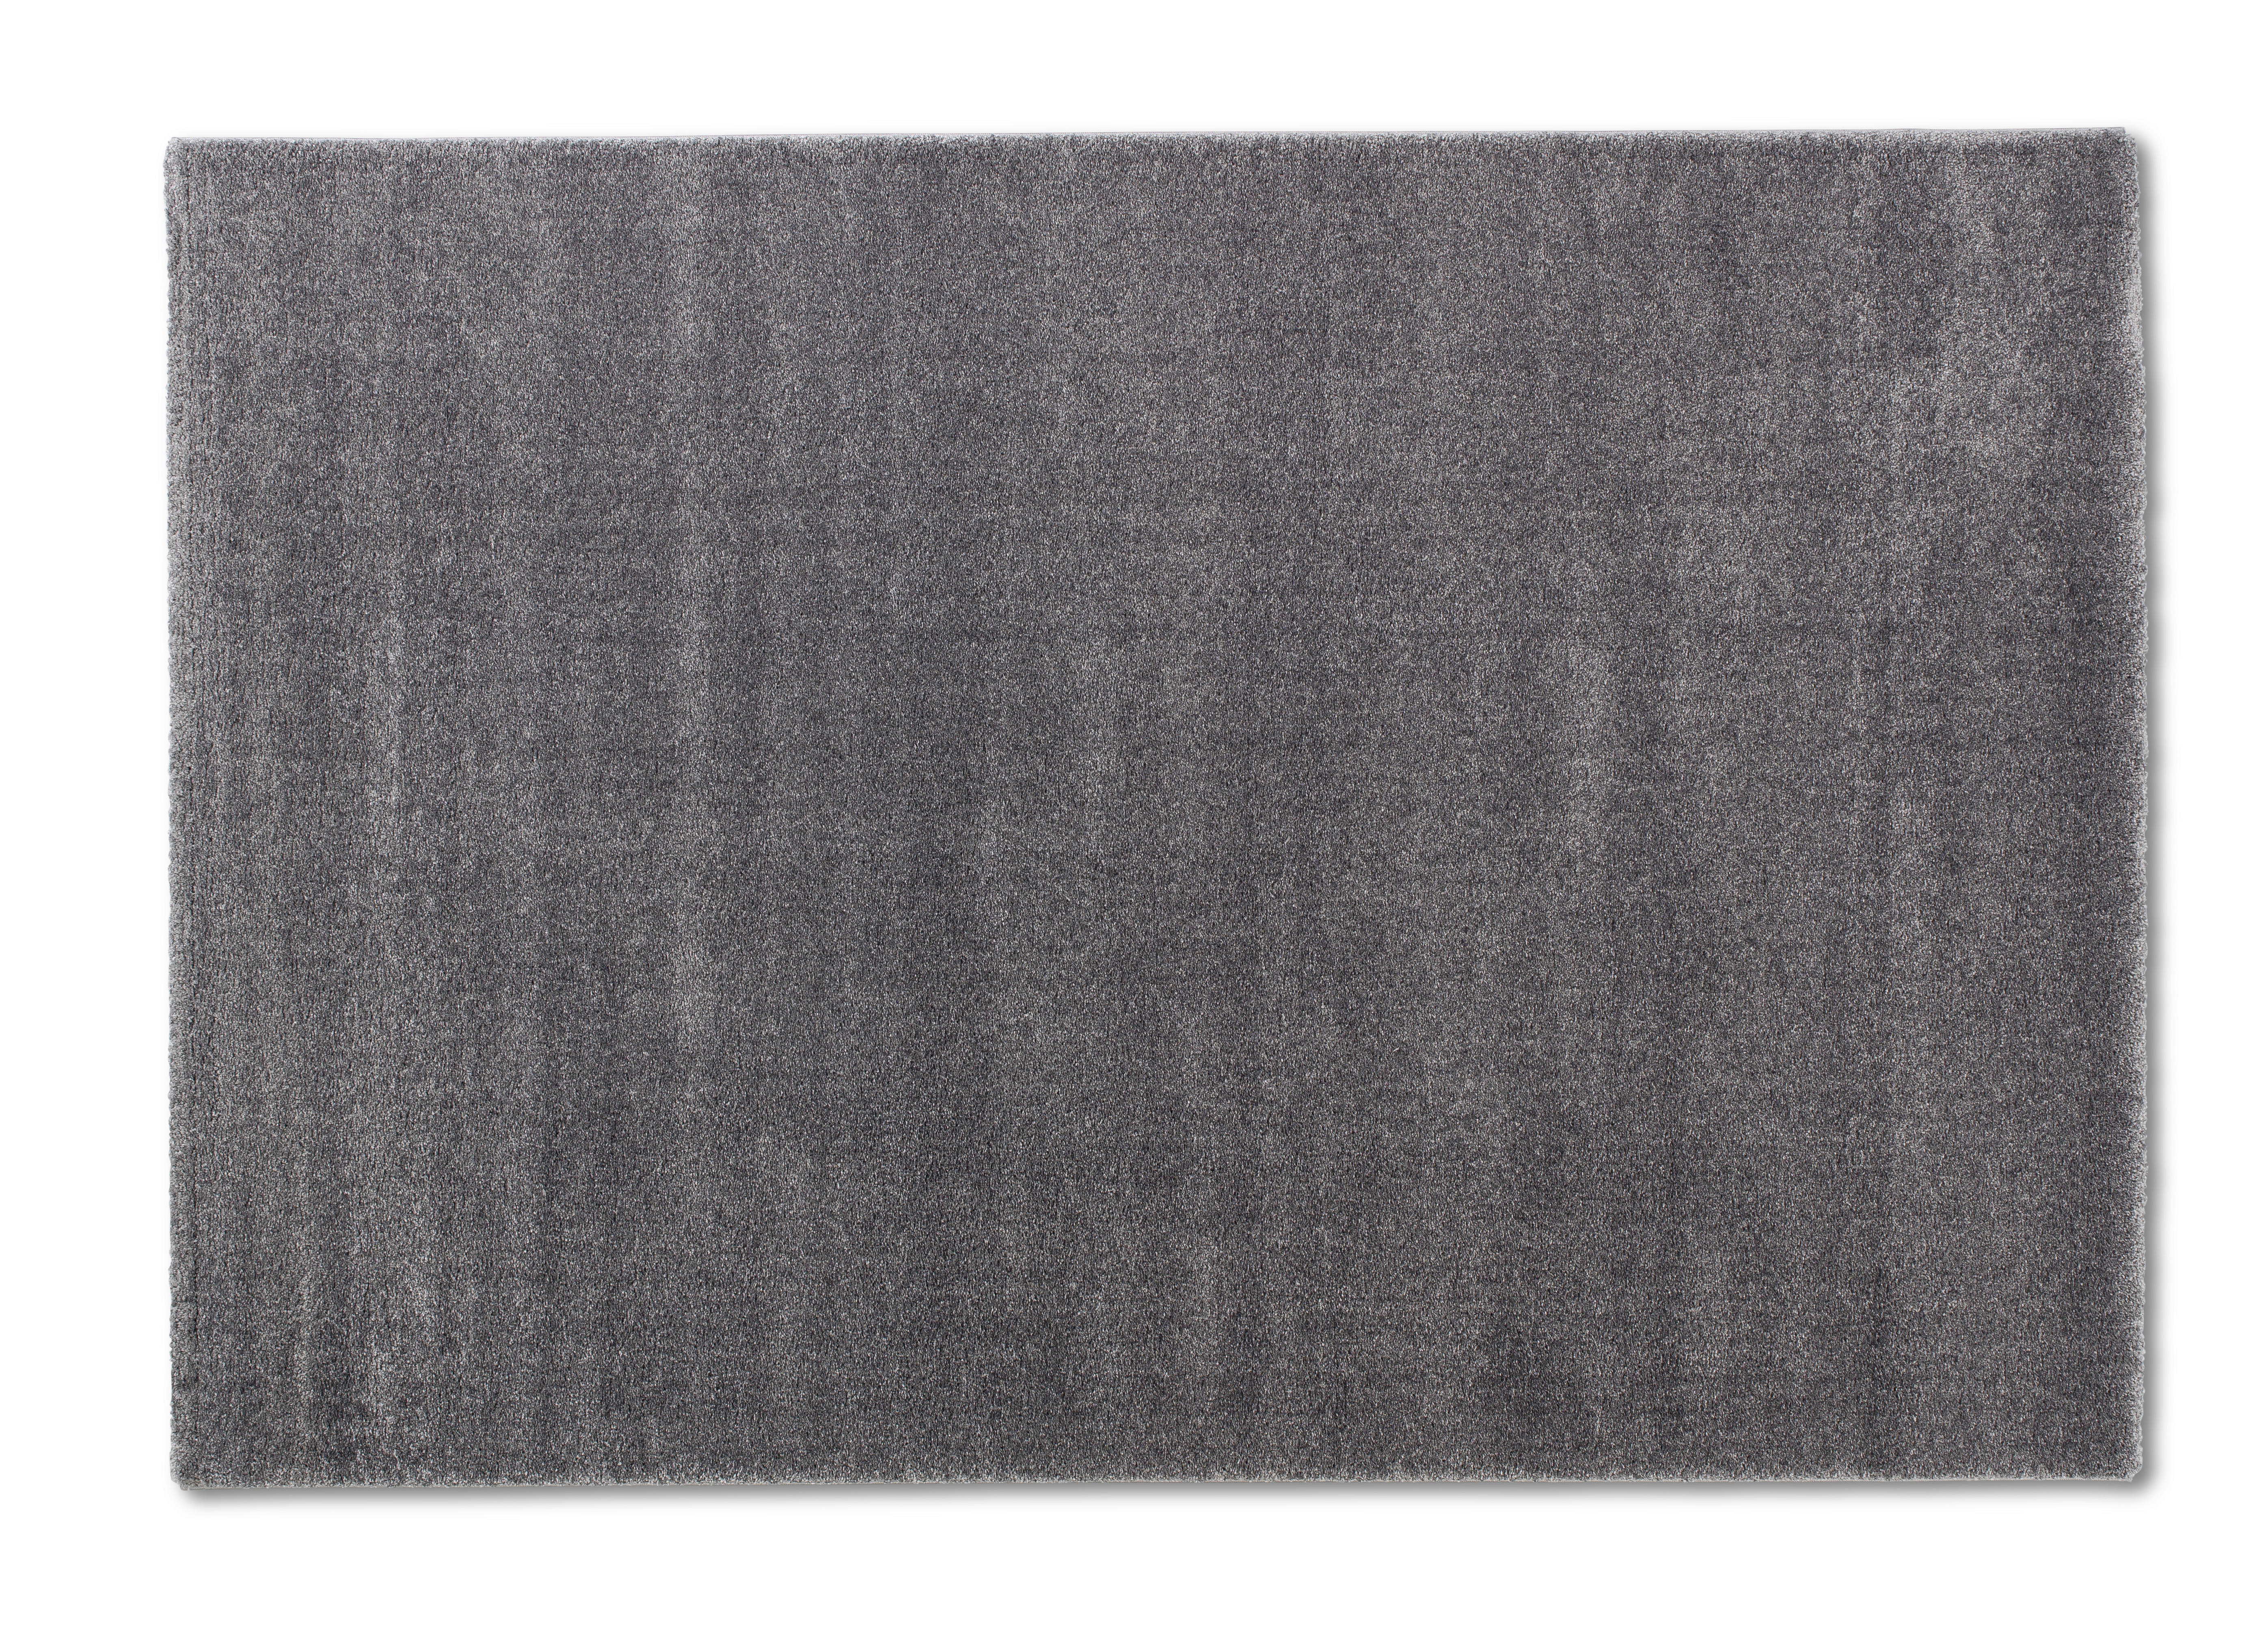 HOCHFLORTEPPICH  67/130 cm  gewebt  Grau   - Grau, Basics, Textil (67/130cm) - Schöner Wohnen